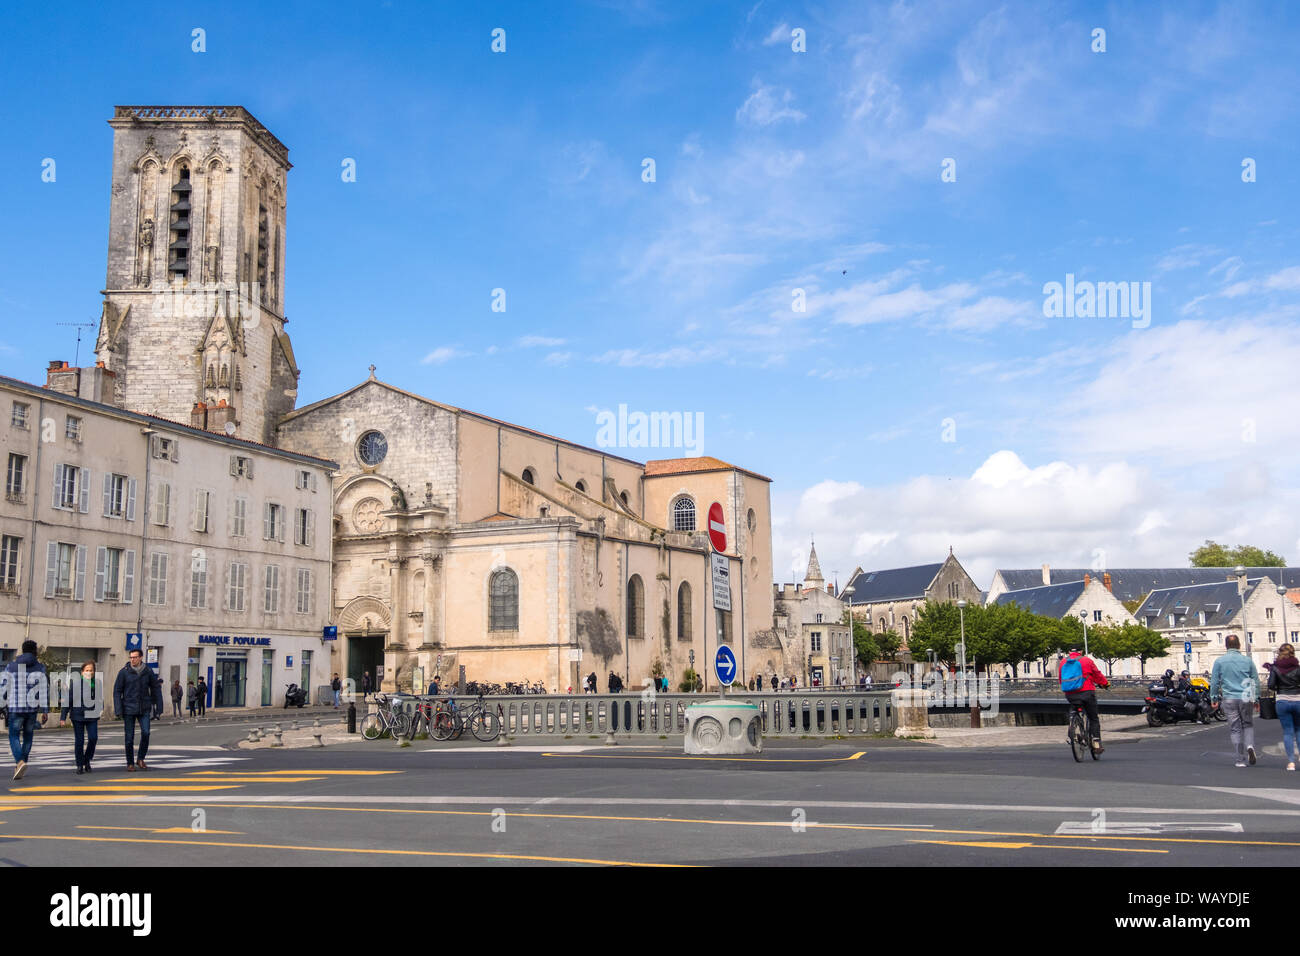 La Rochelle, Francia - 08 Maggio, 2019: St Sauveur chiesa nel porto di La Rochelle nella regione Poitou-Charentes della Francia Foto Stock